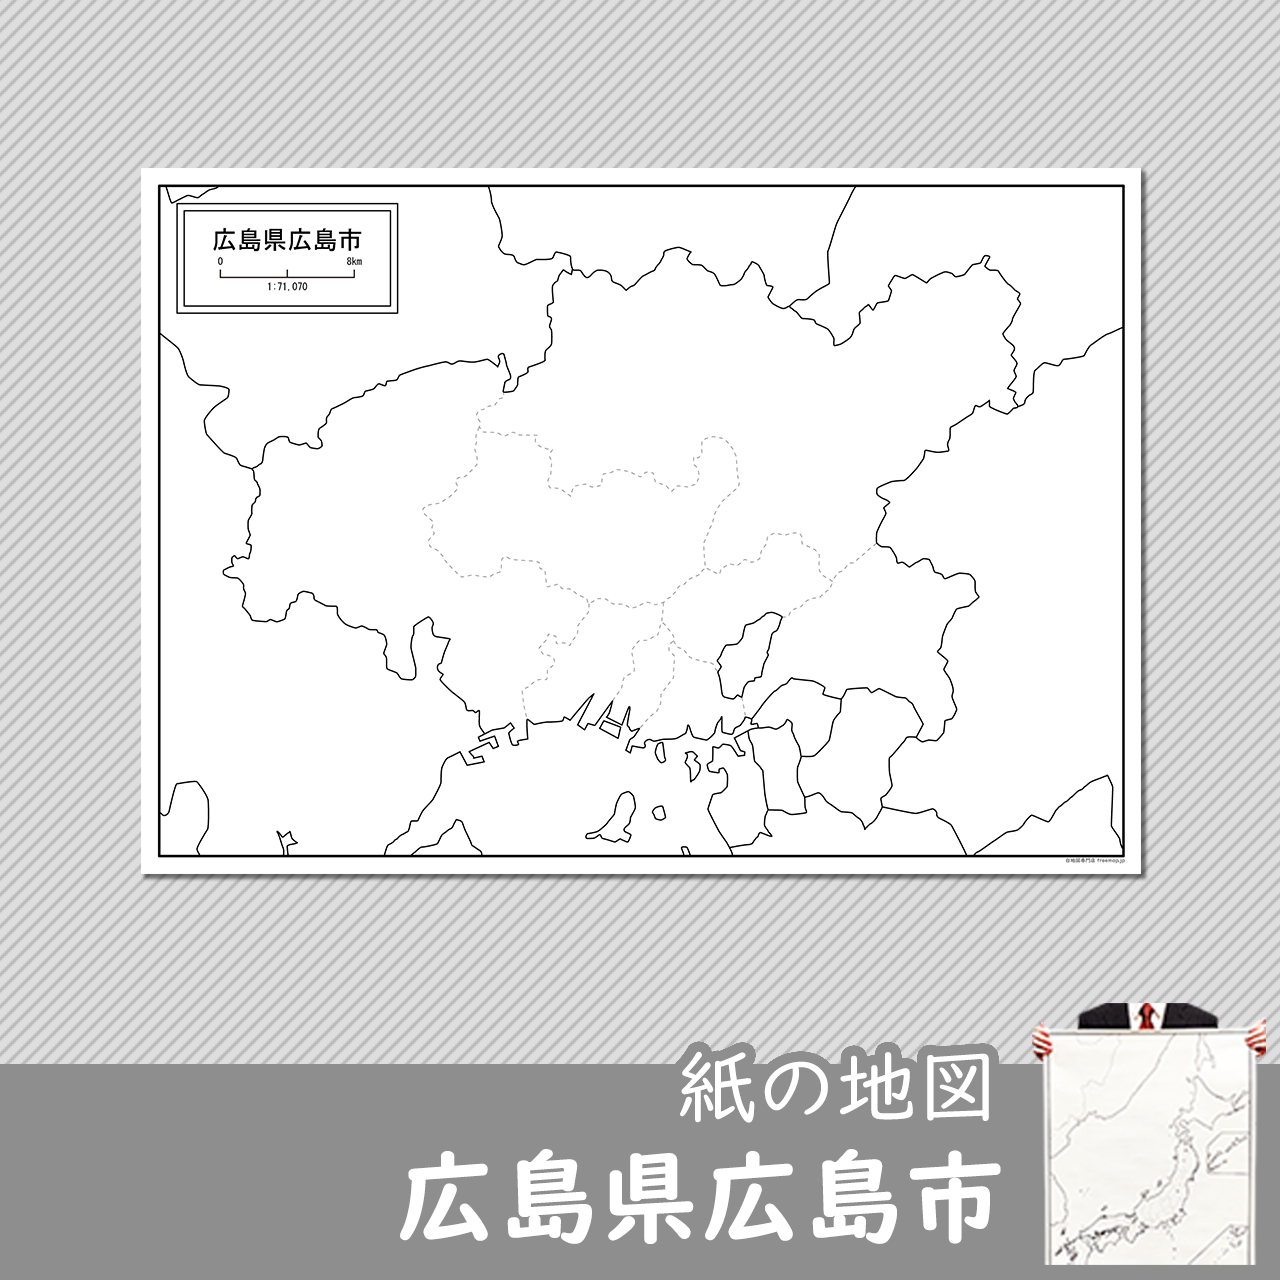 広島市の紙の白地図のサムネイル